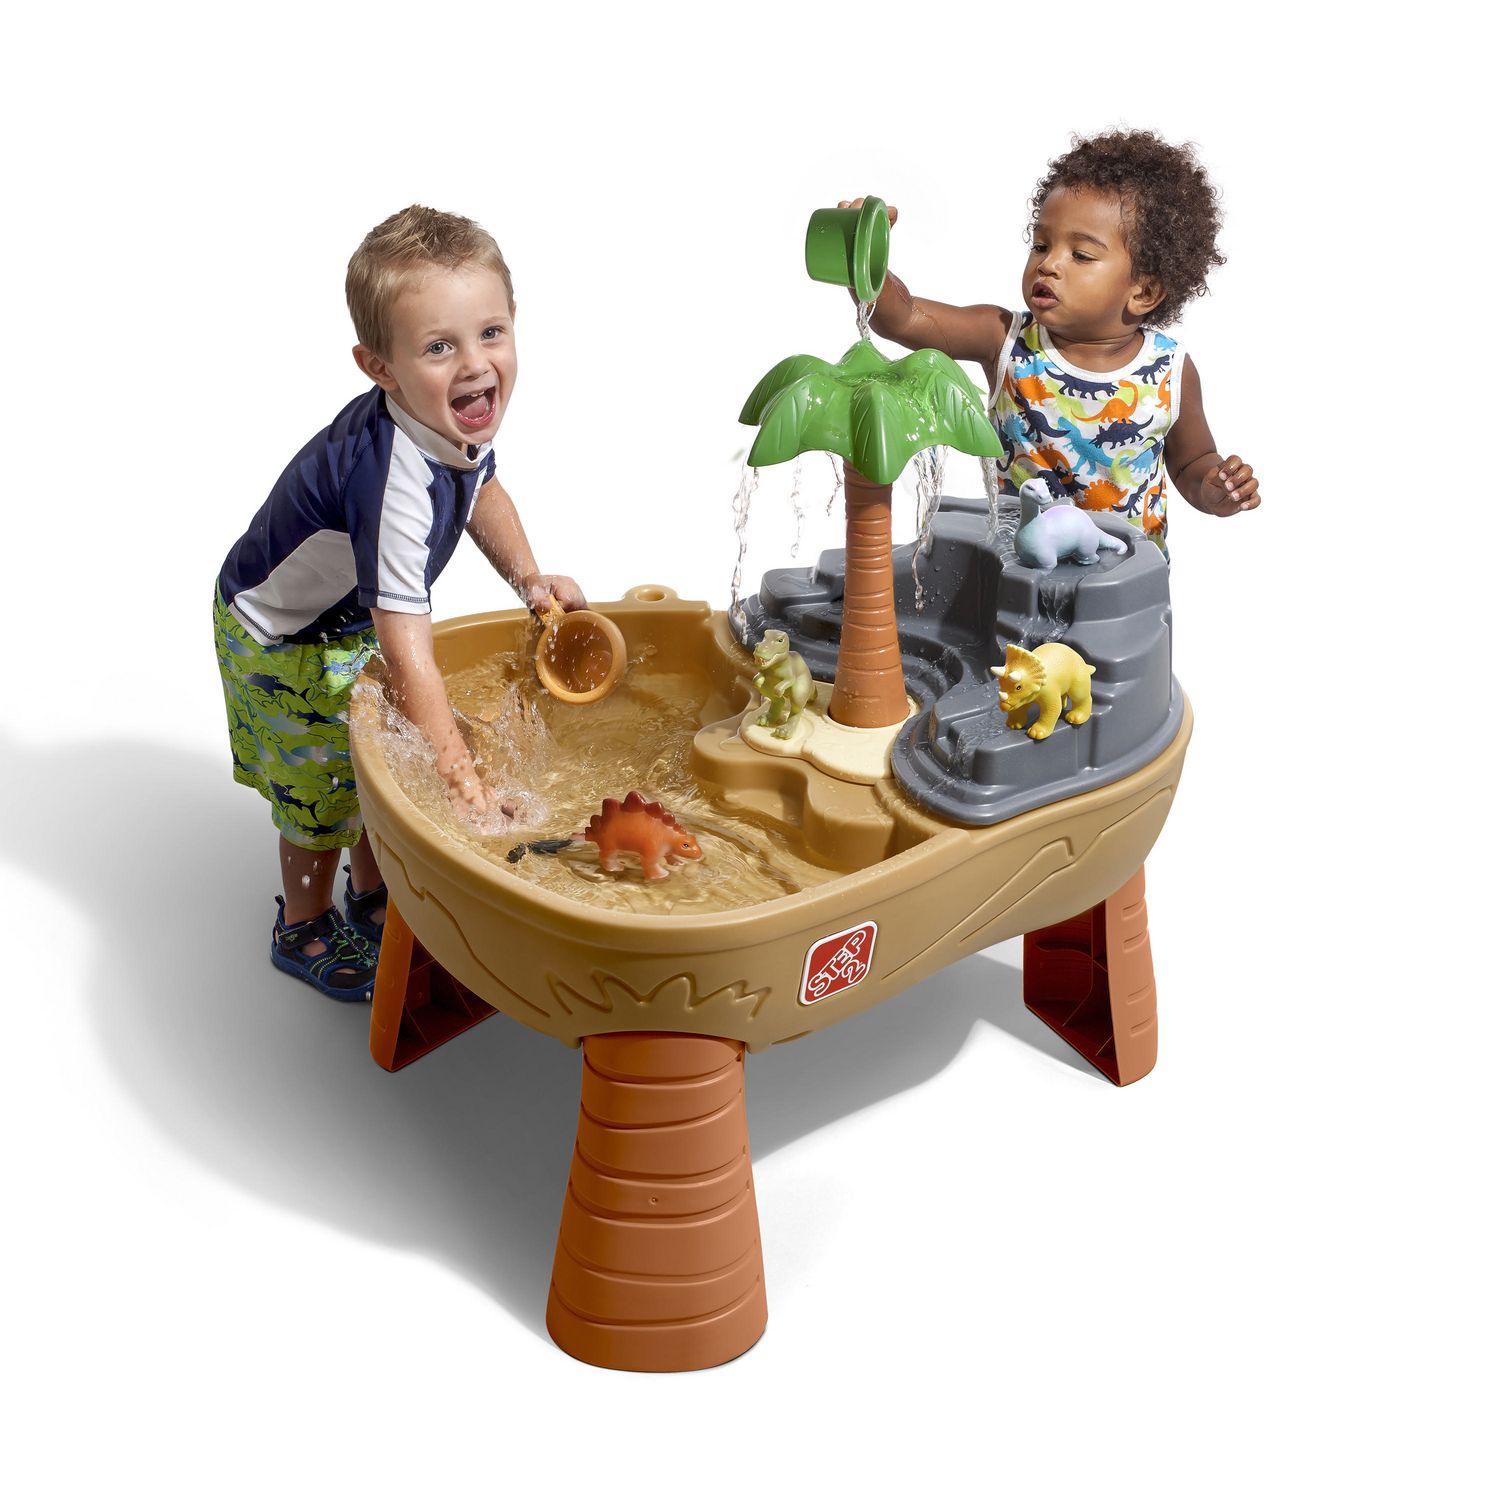 sand table toys